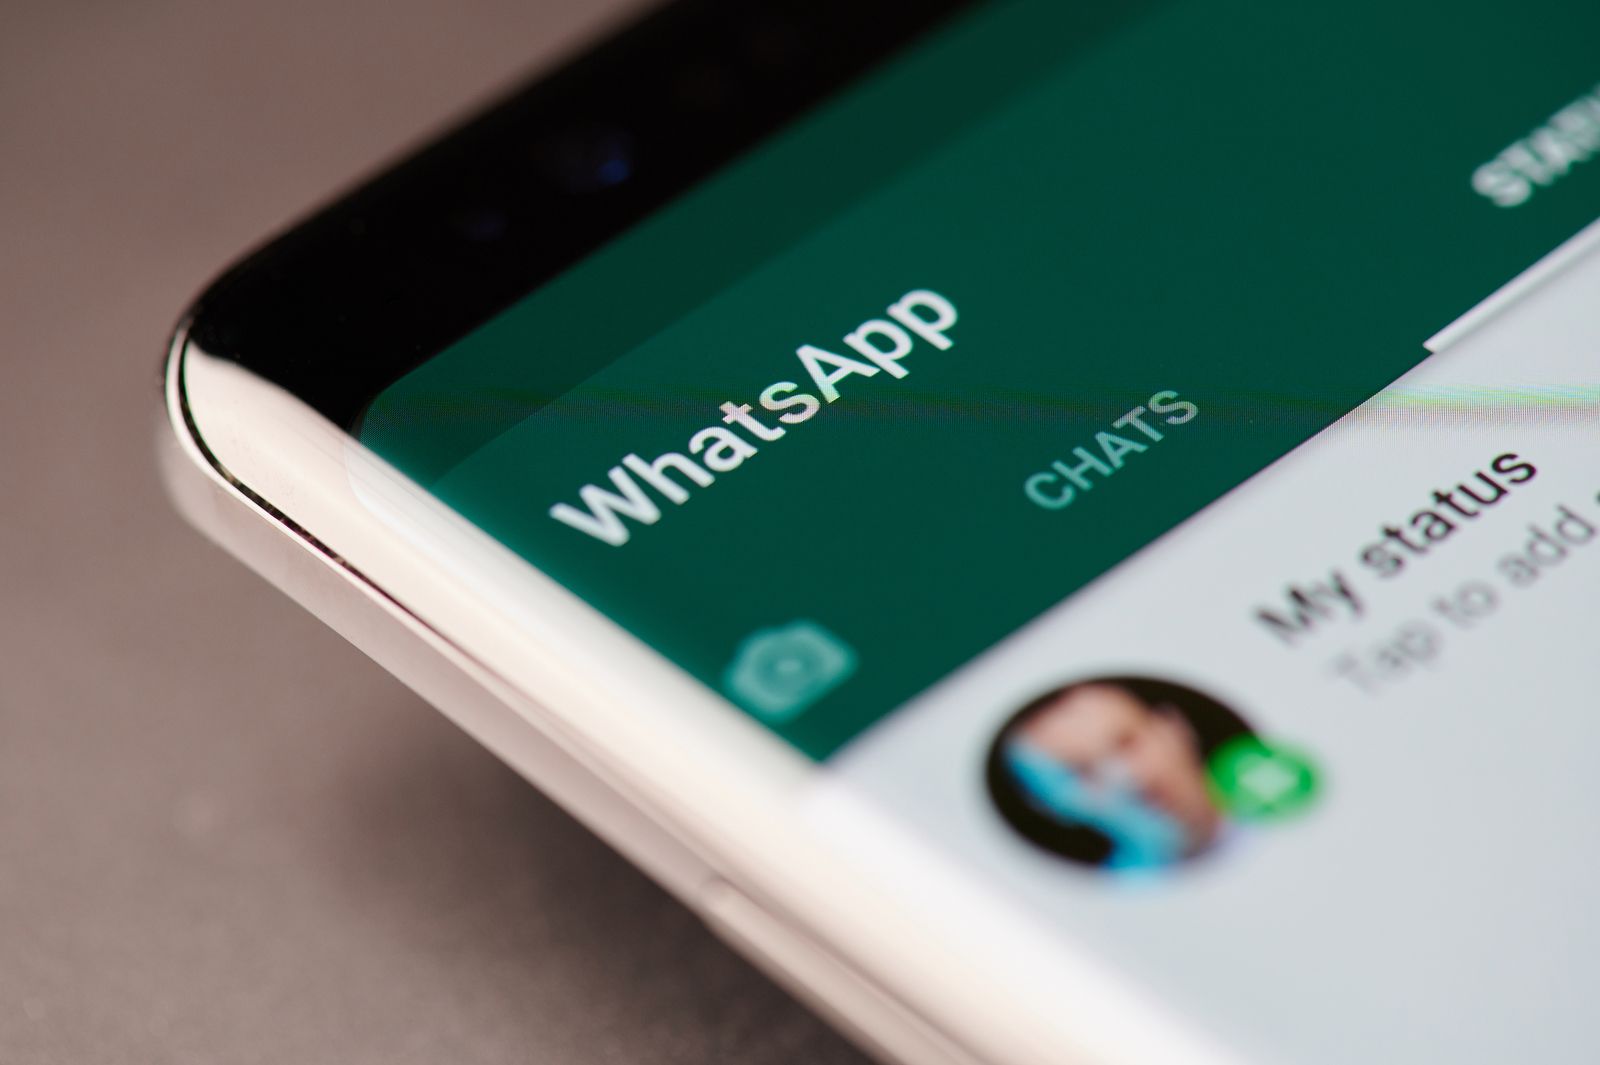 WhatsApp web: cómo funciona y algunos trucos para utilizarlo